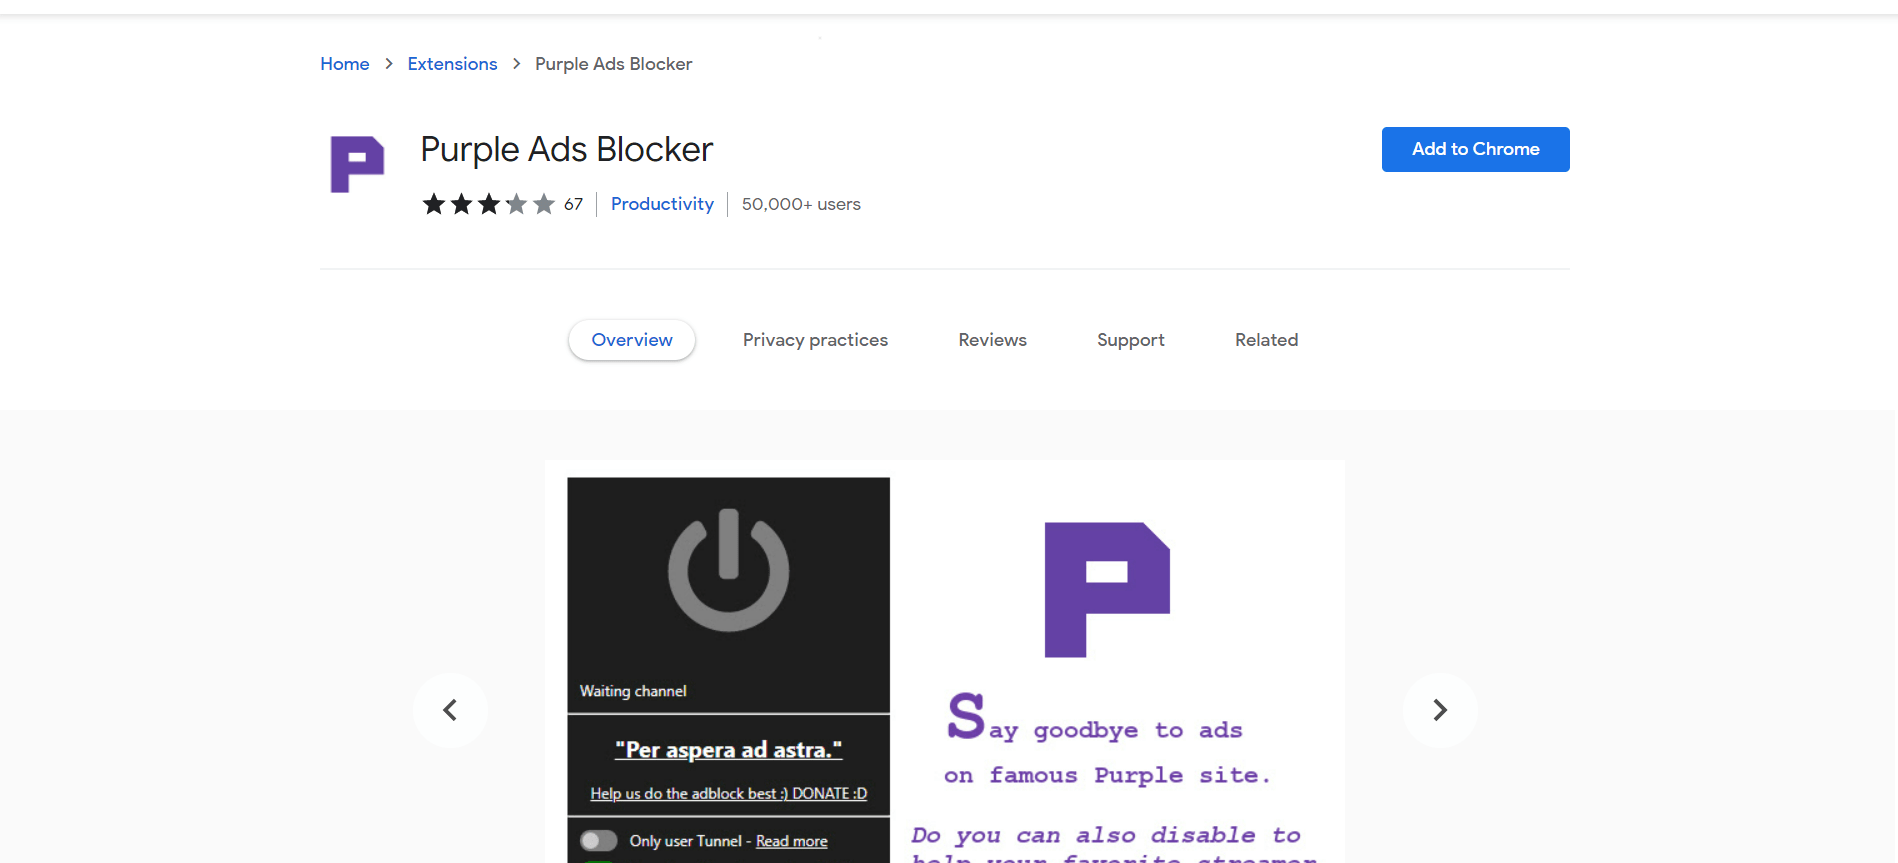 Purple Ads Blocker